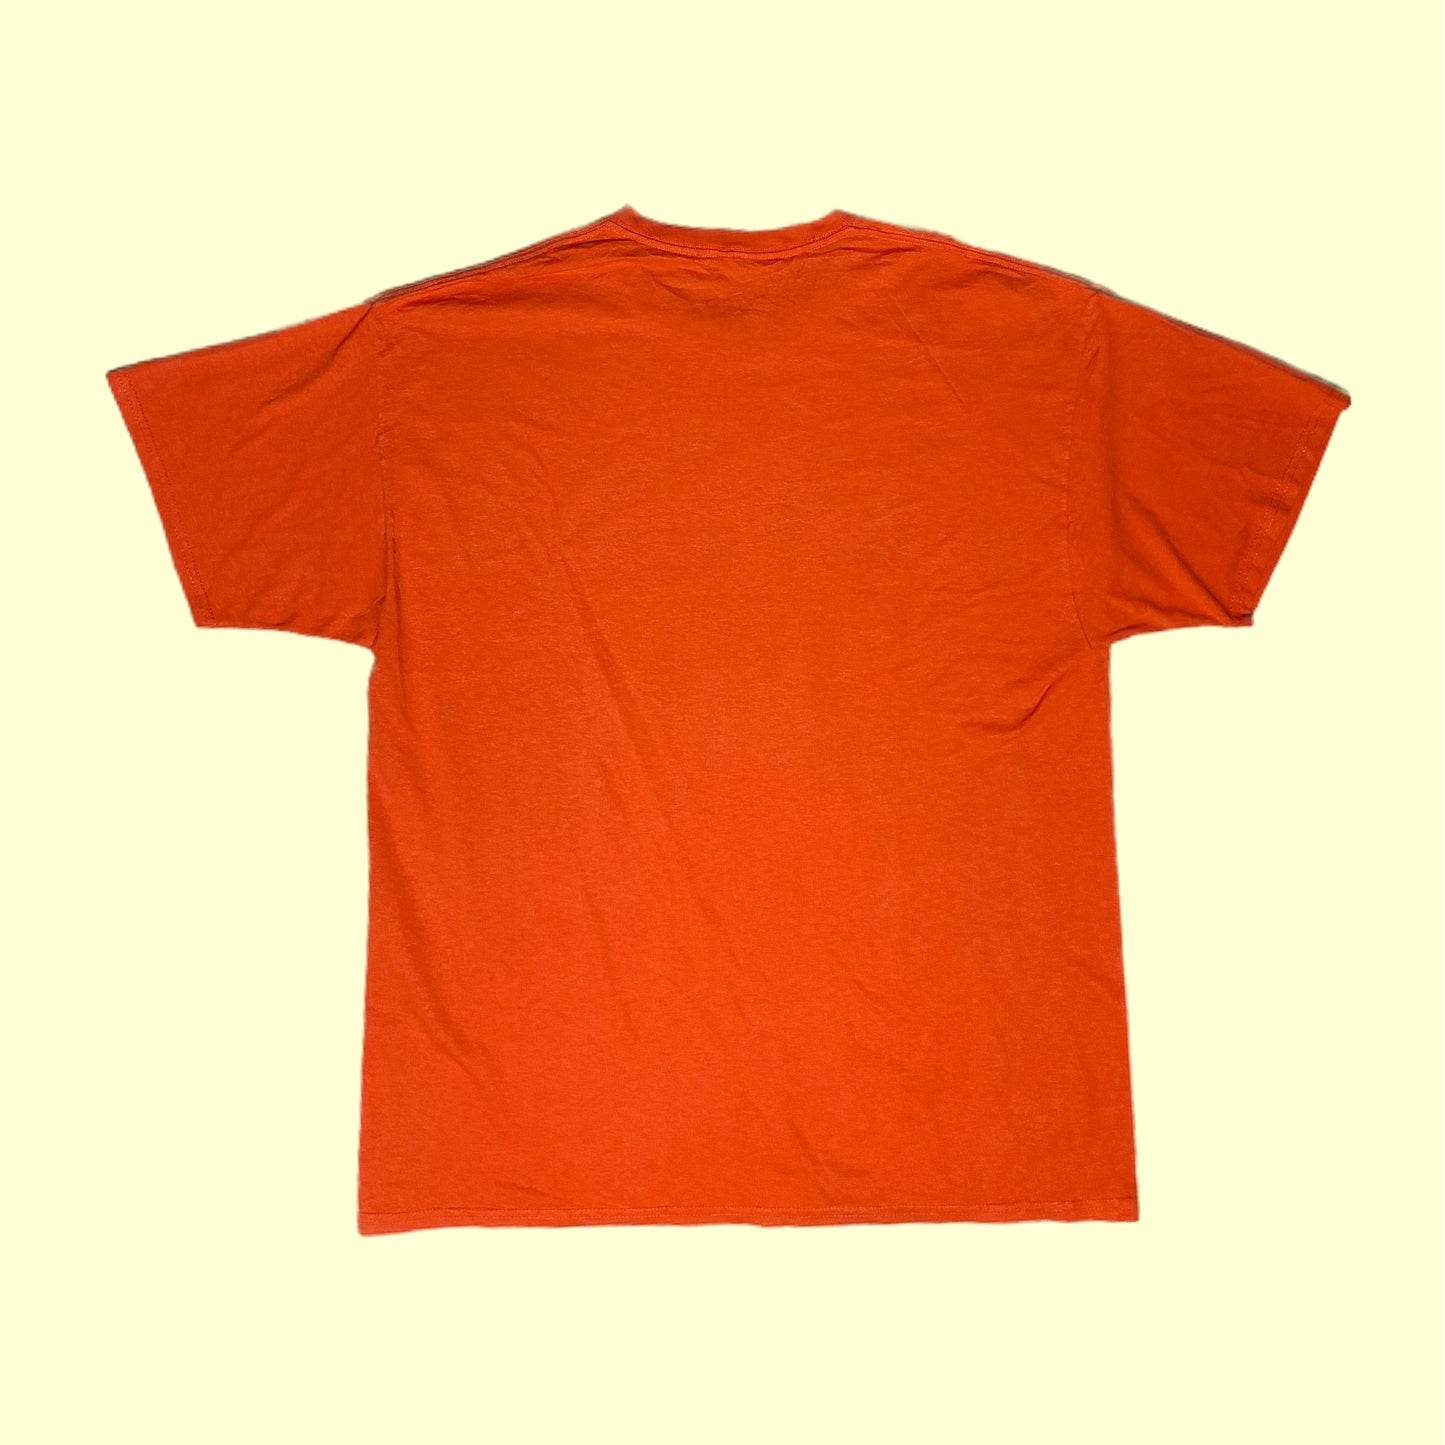 CHS Bears Football T-Shirt - XL